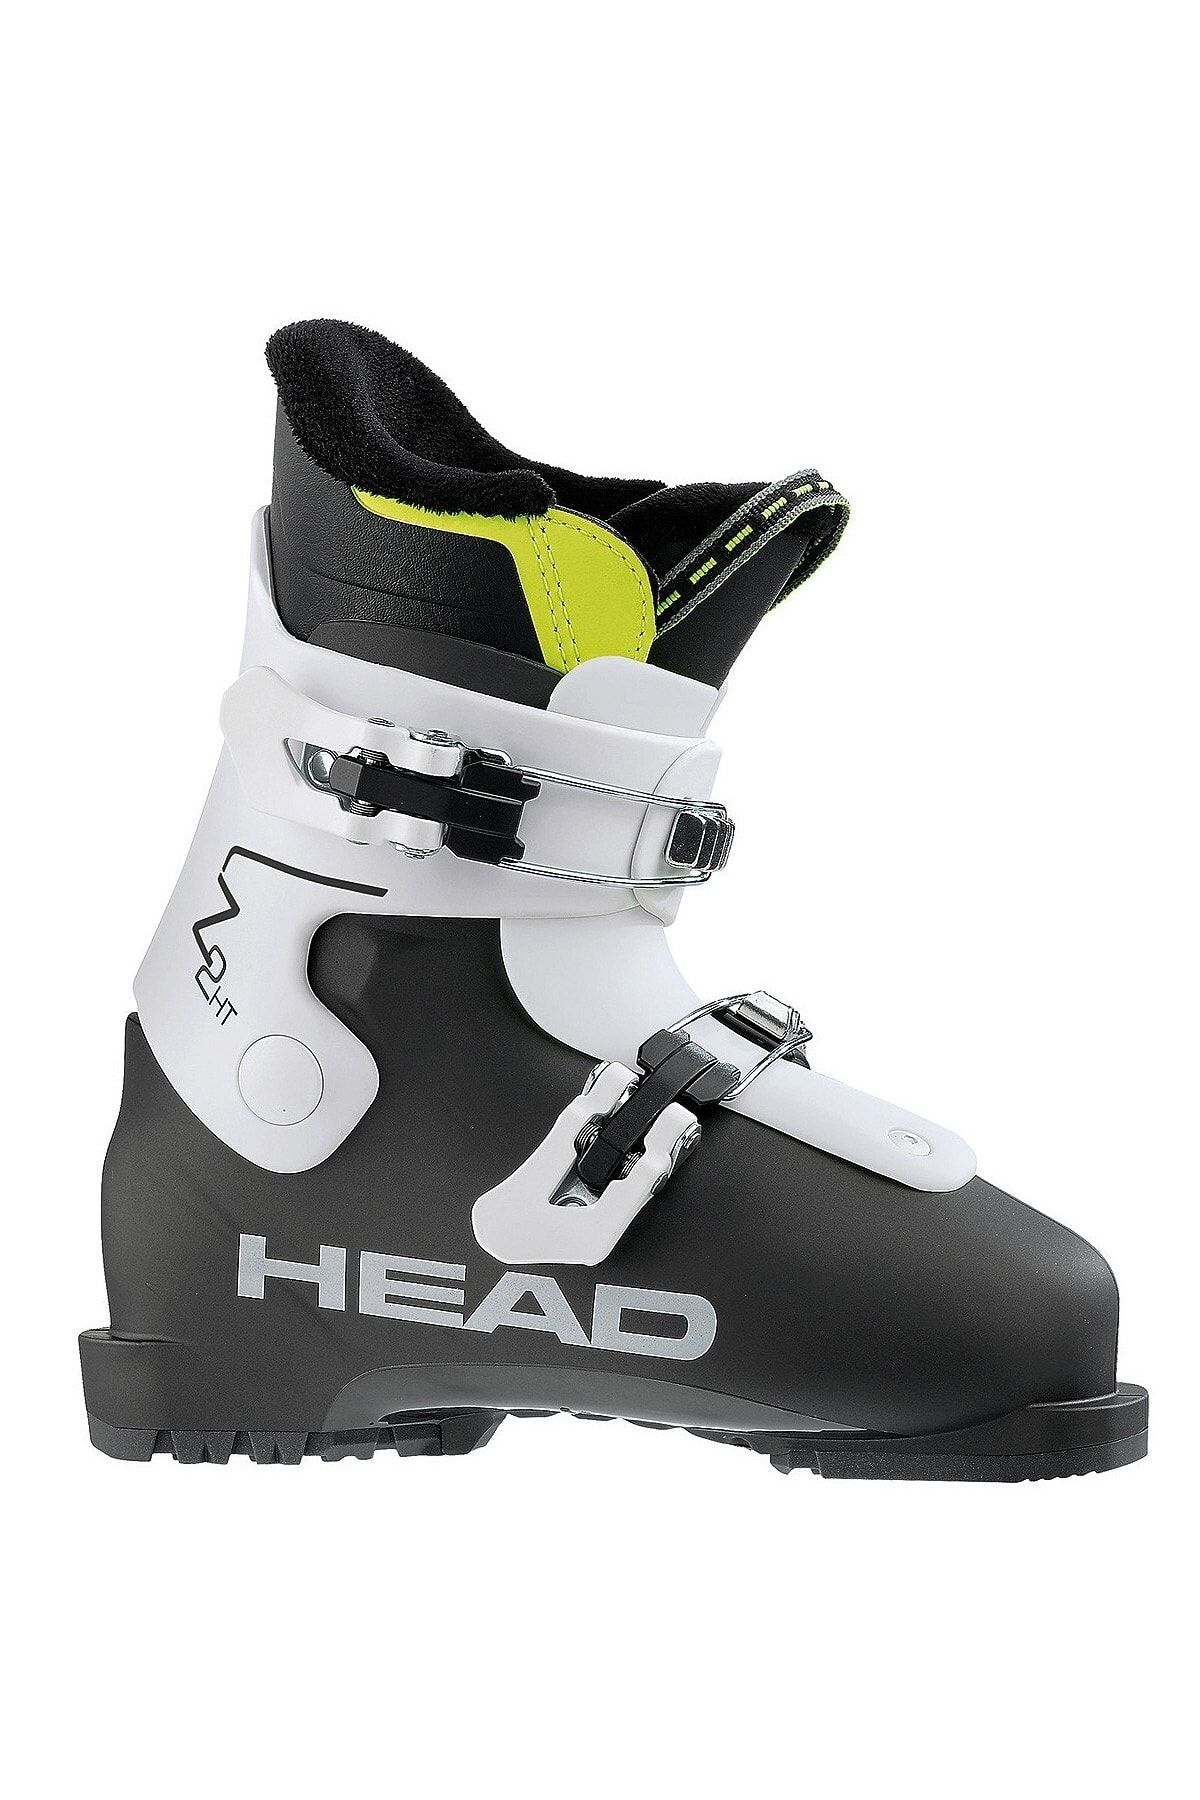 Head Z 2 Hrs Çocuk Kayak Ayakkabısı